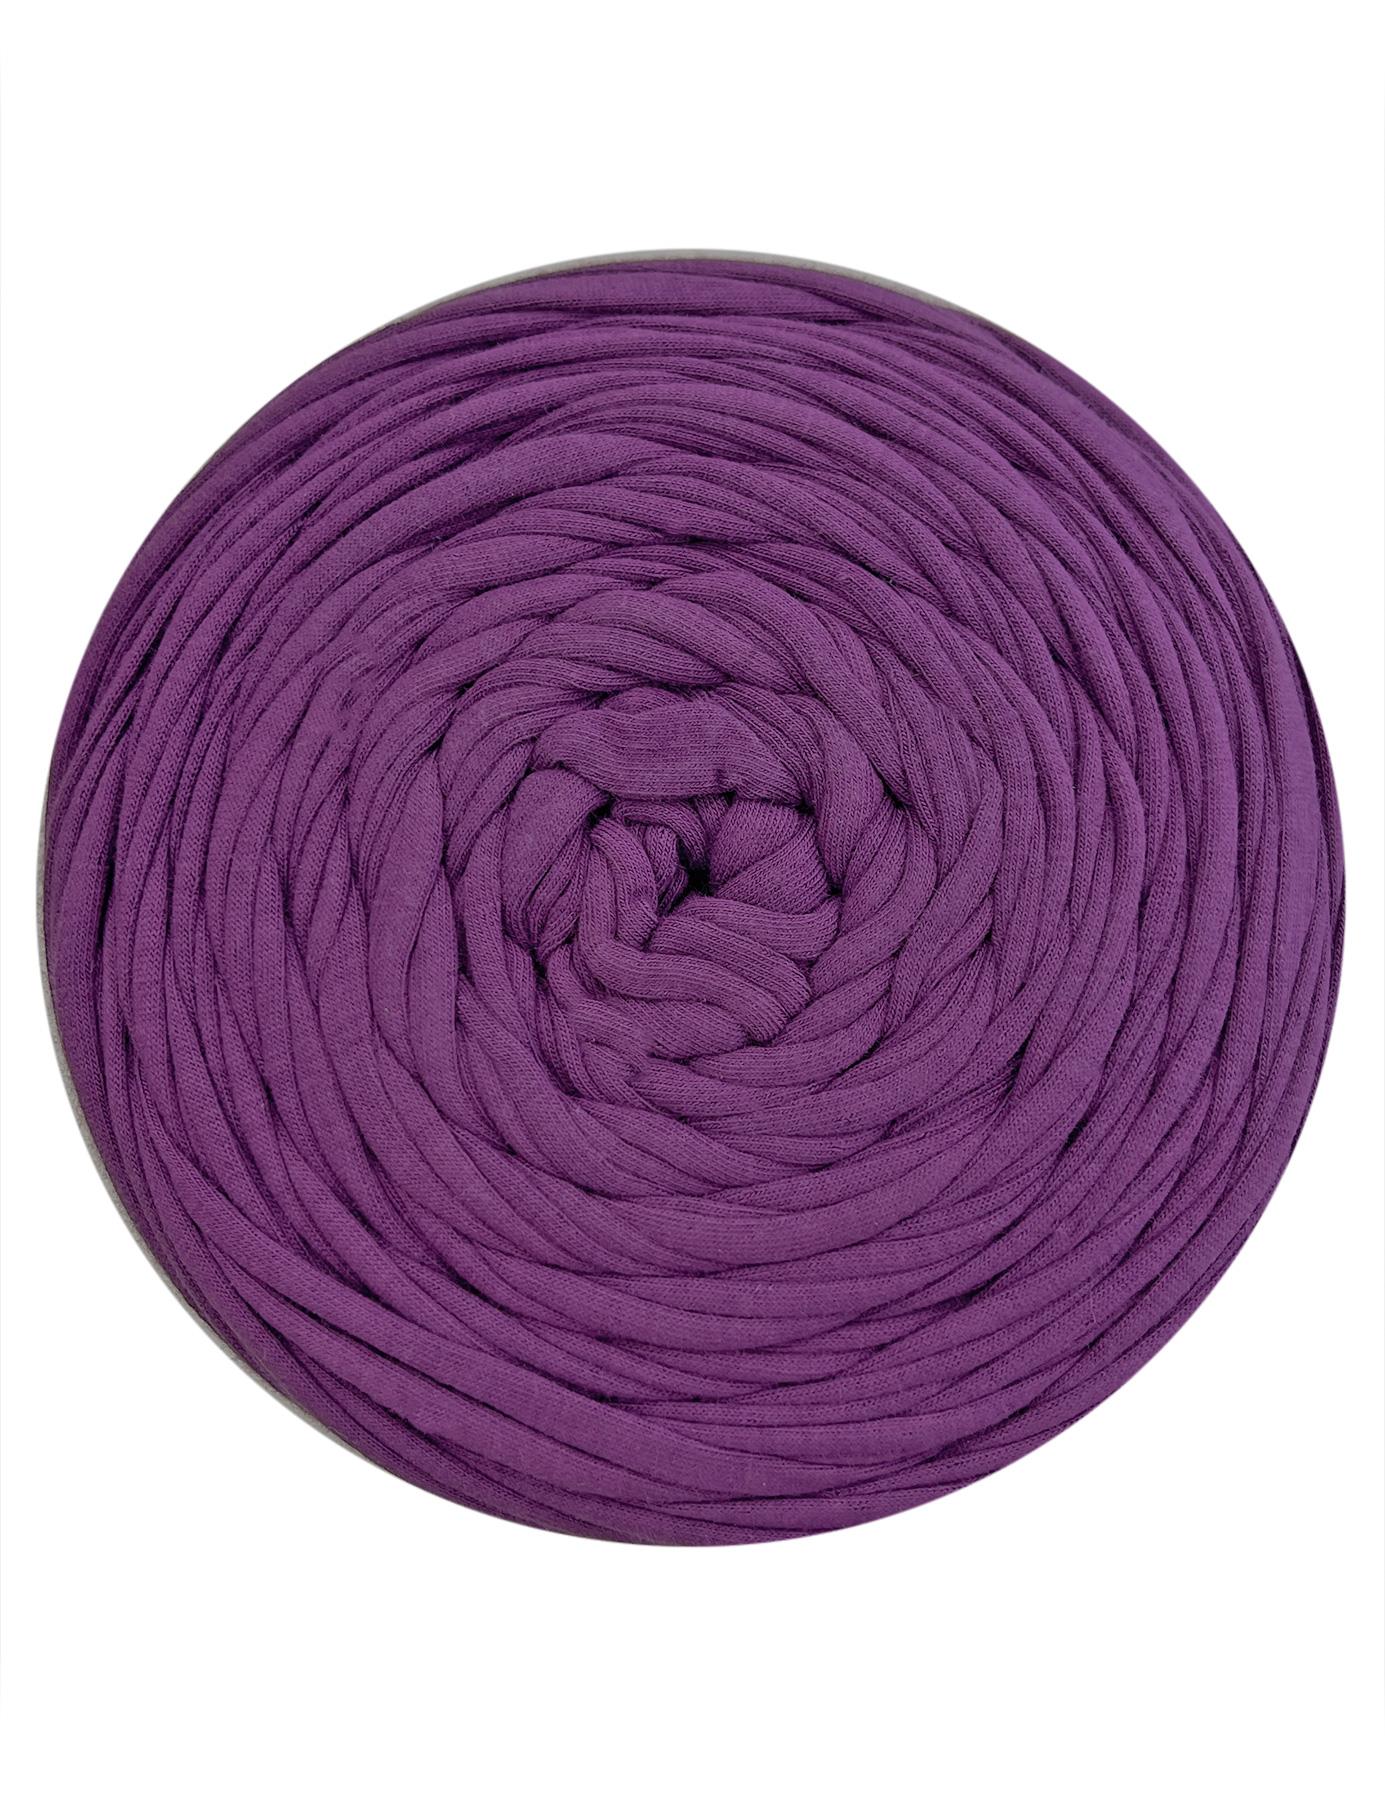 Dark magenta t-shirt yarn by Hoooked Zpagetti (100-120m)